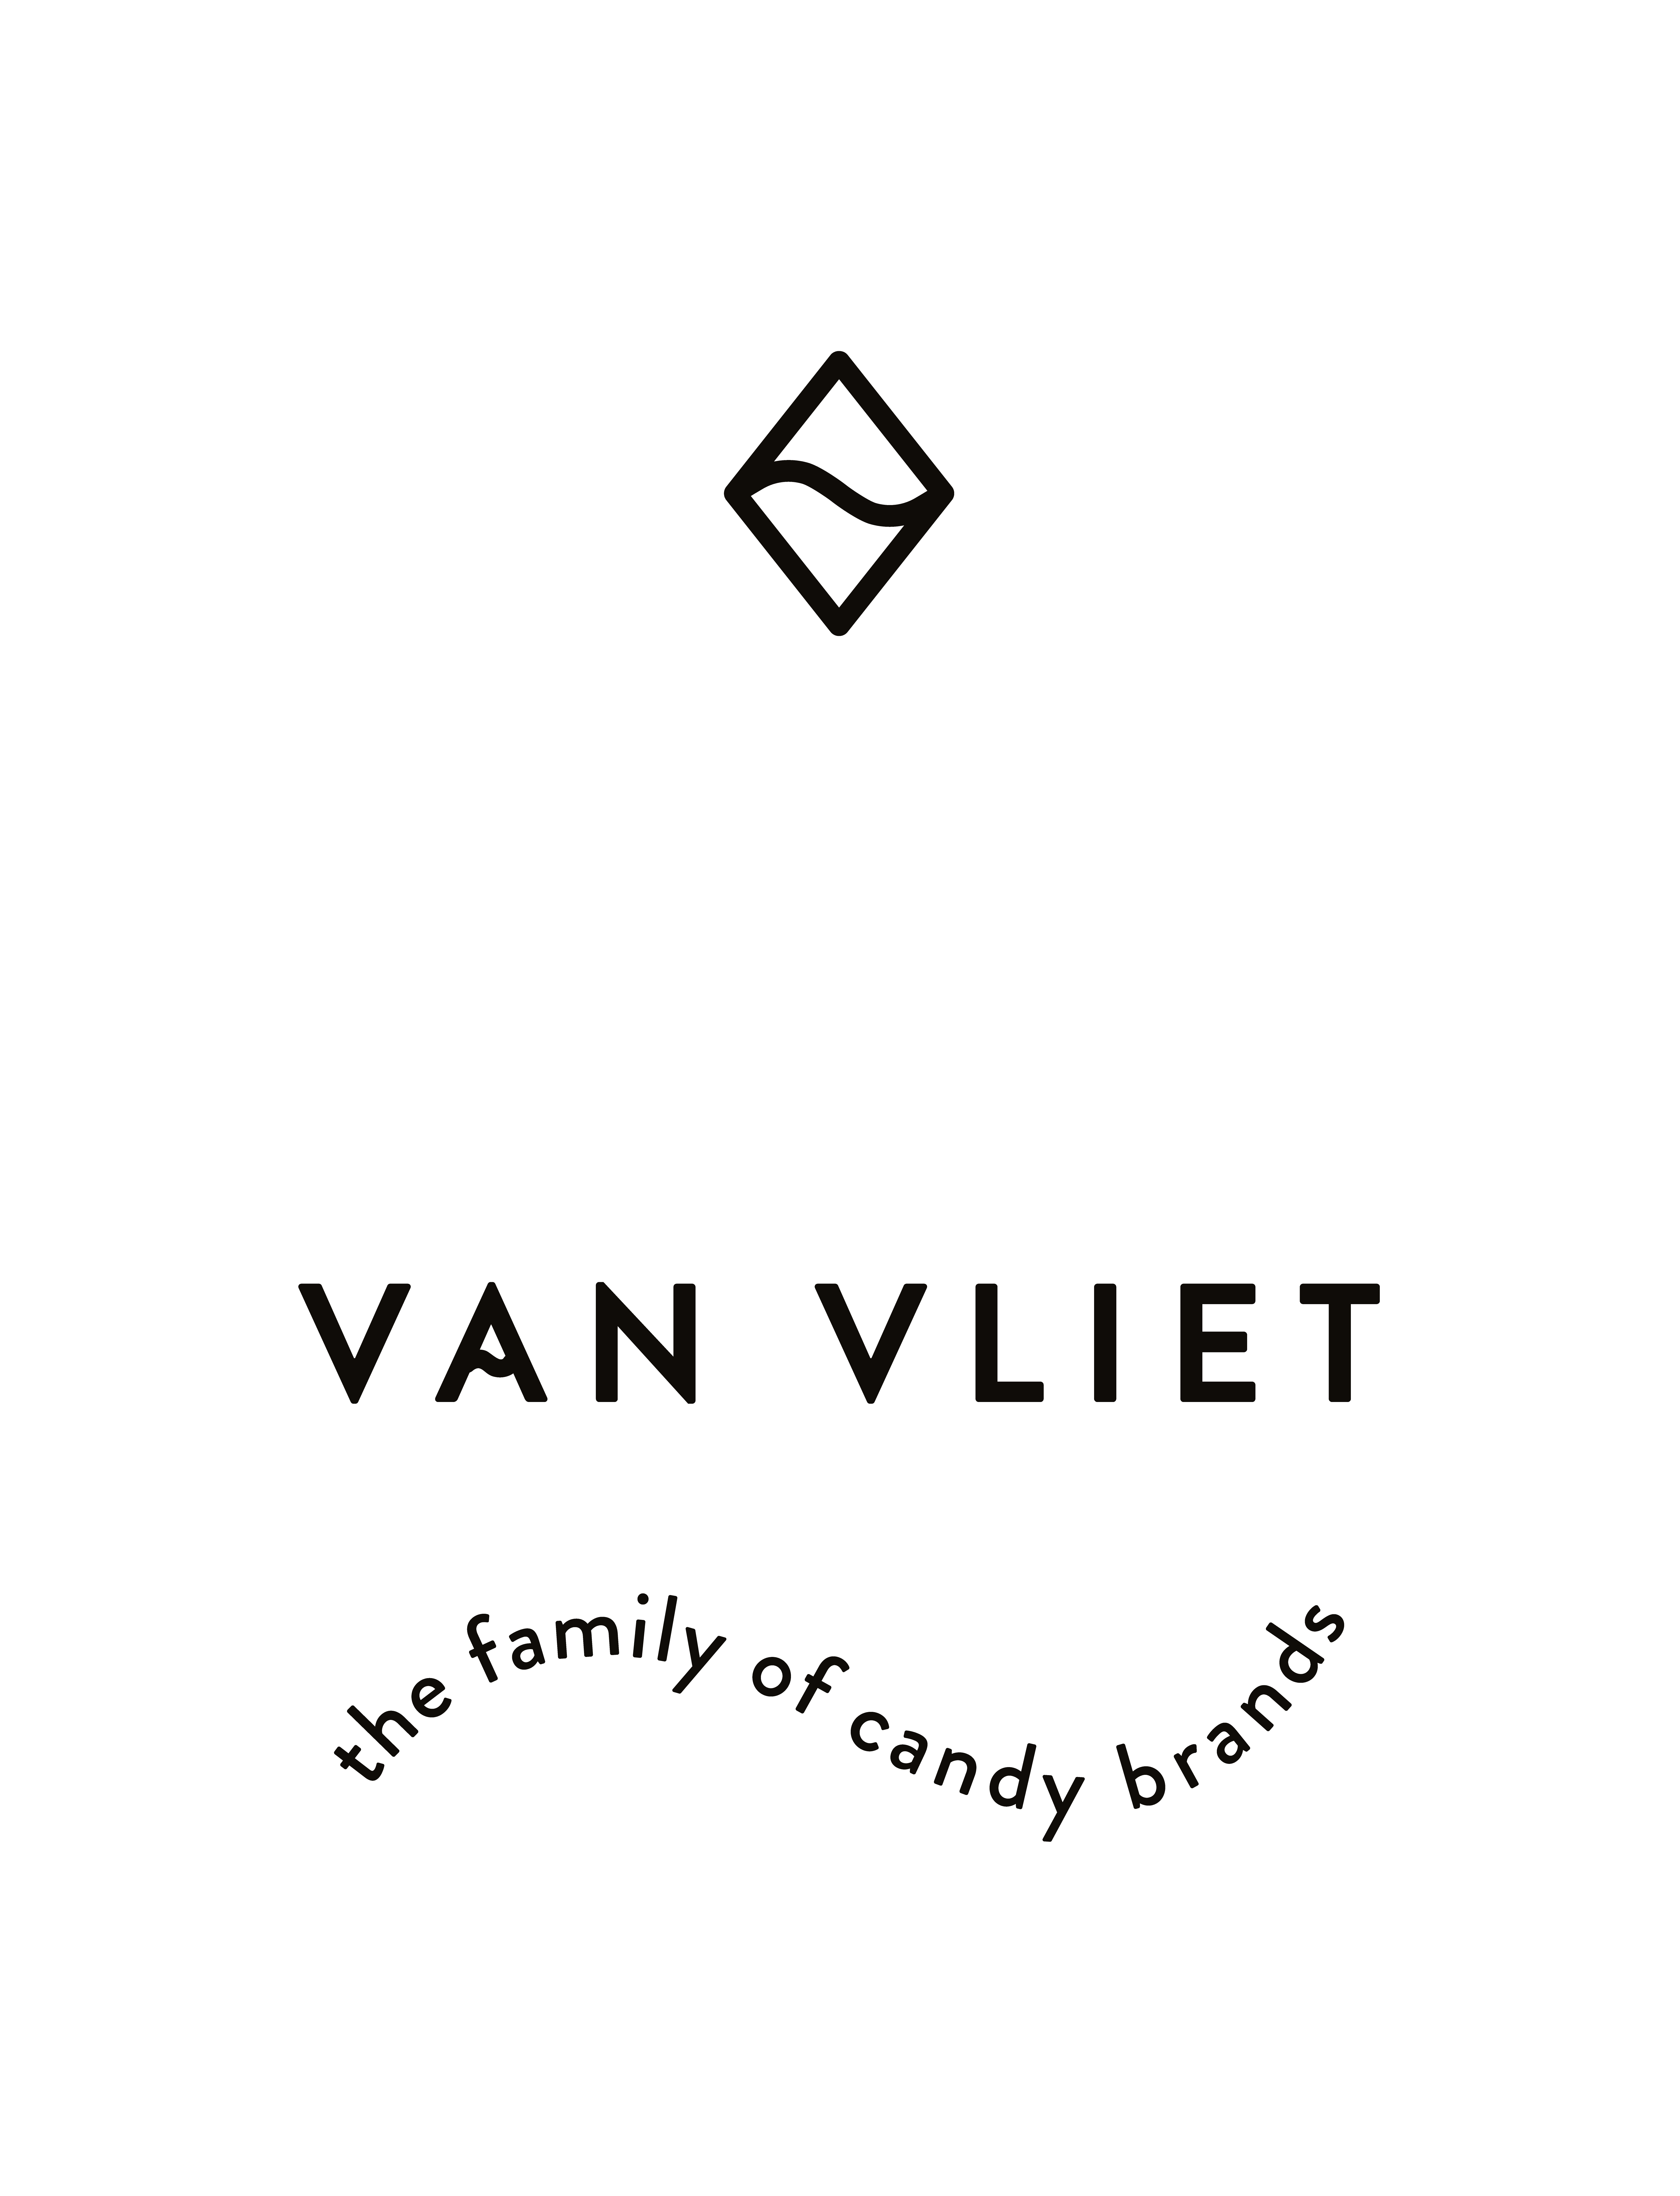 Van Vliet